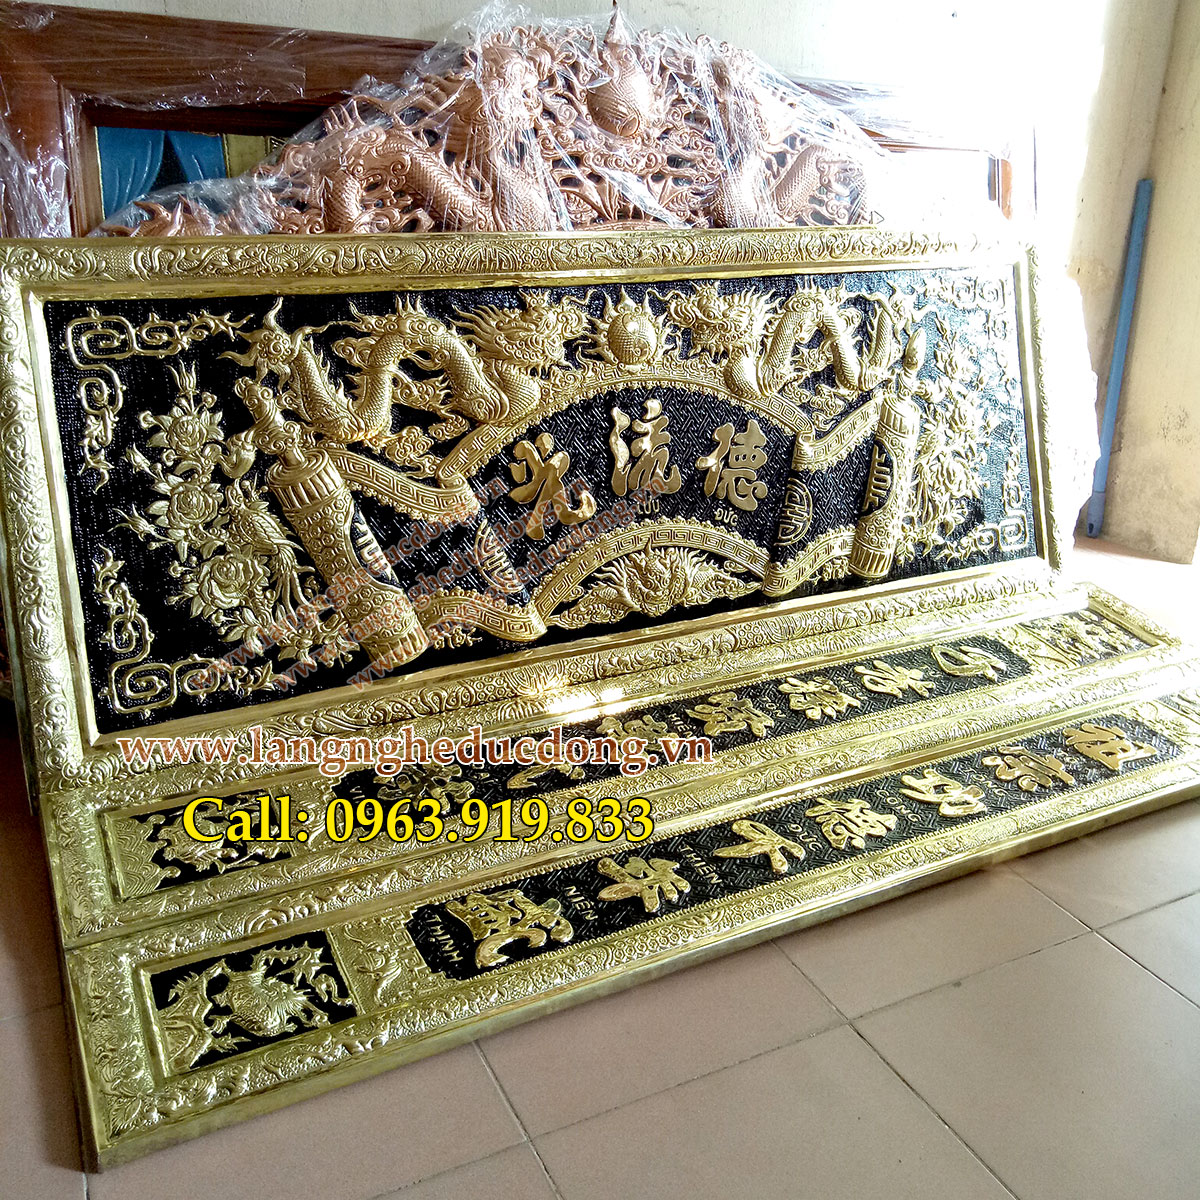 langngheducdong.vn - bộ đại tự đồng vàng nền đen đồng dầy 0.6ly, kích thước 60x155cm